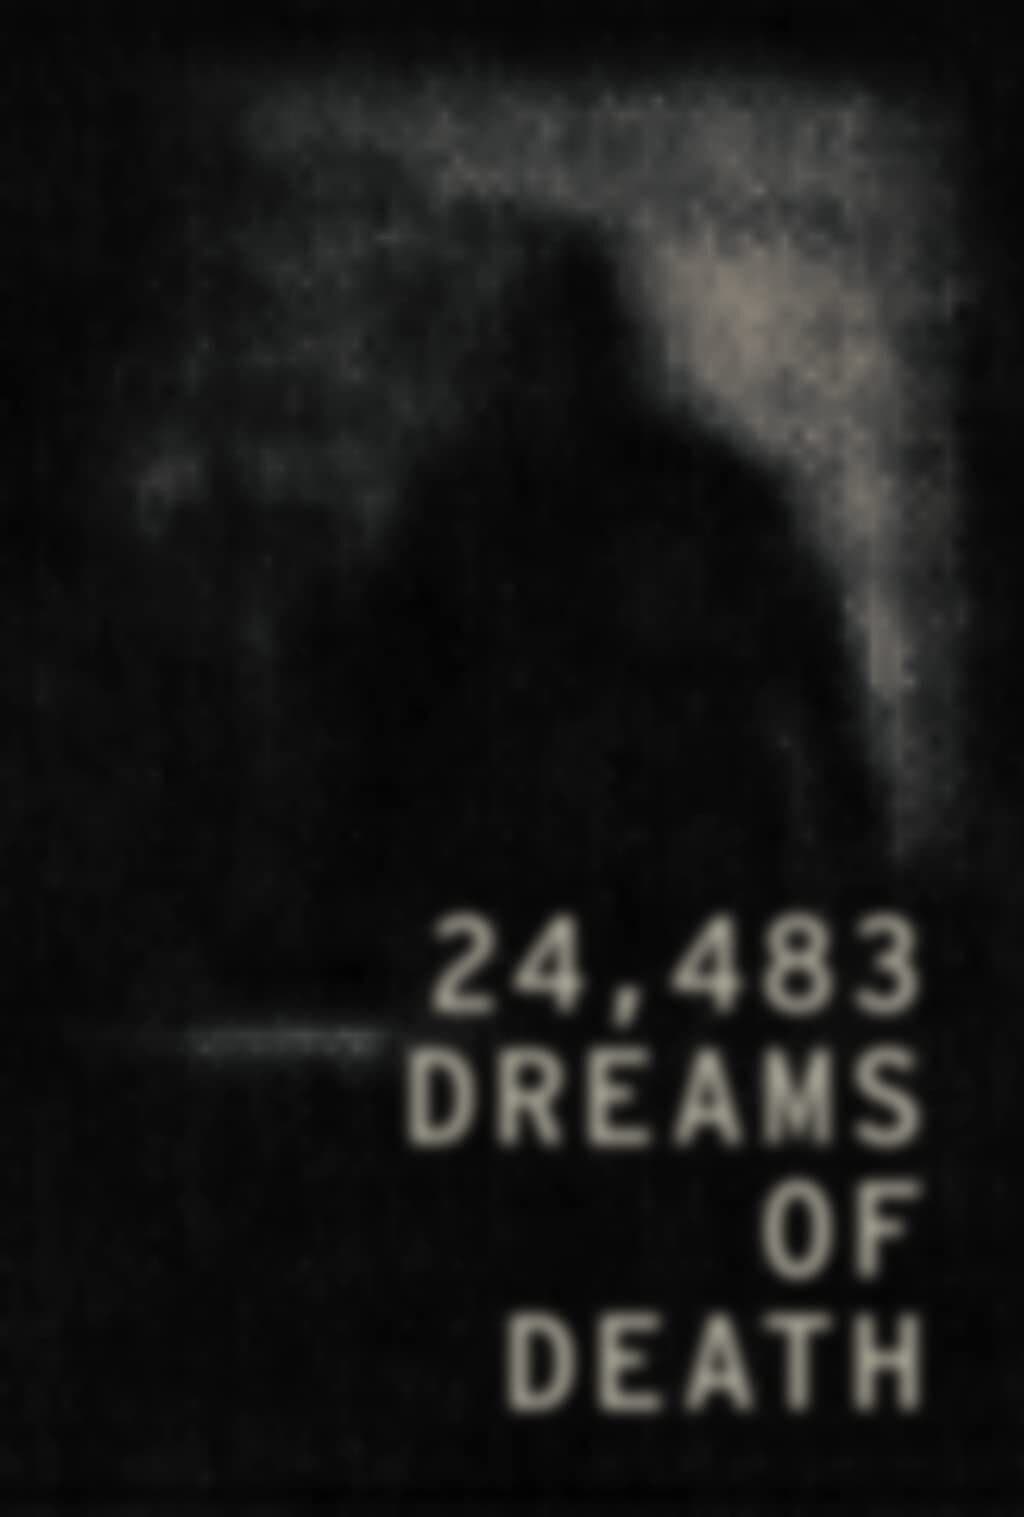 24,483 Dreams of Death